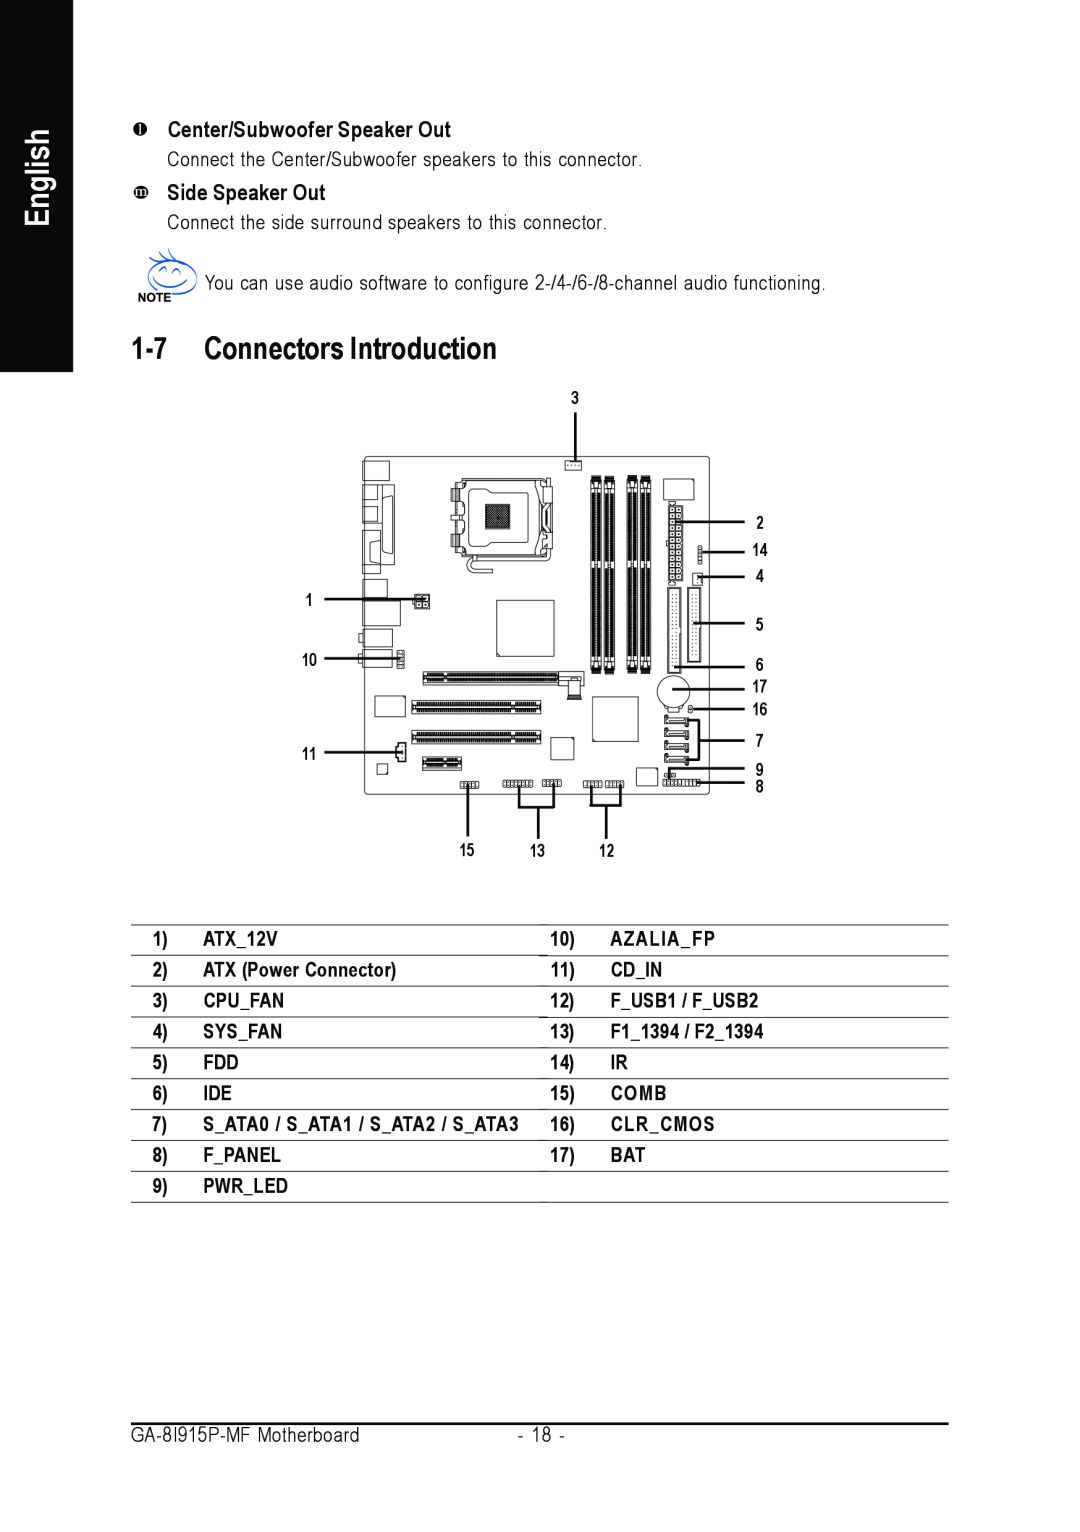 Gigabyte GA-8I915P-MF Connectors Introduction, Center/Subwoofer Speaker Out, Side Speaker Out, English, ATX12V, Azaliafp 